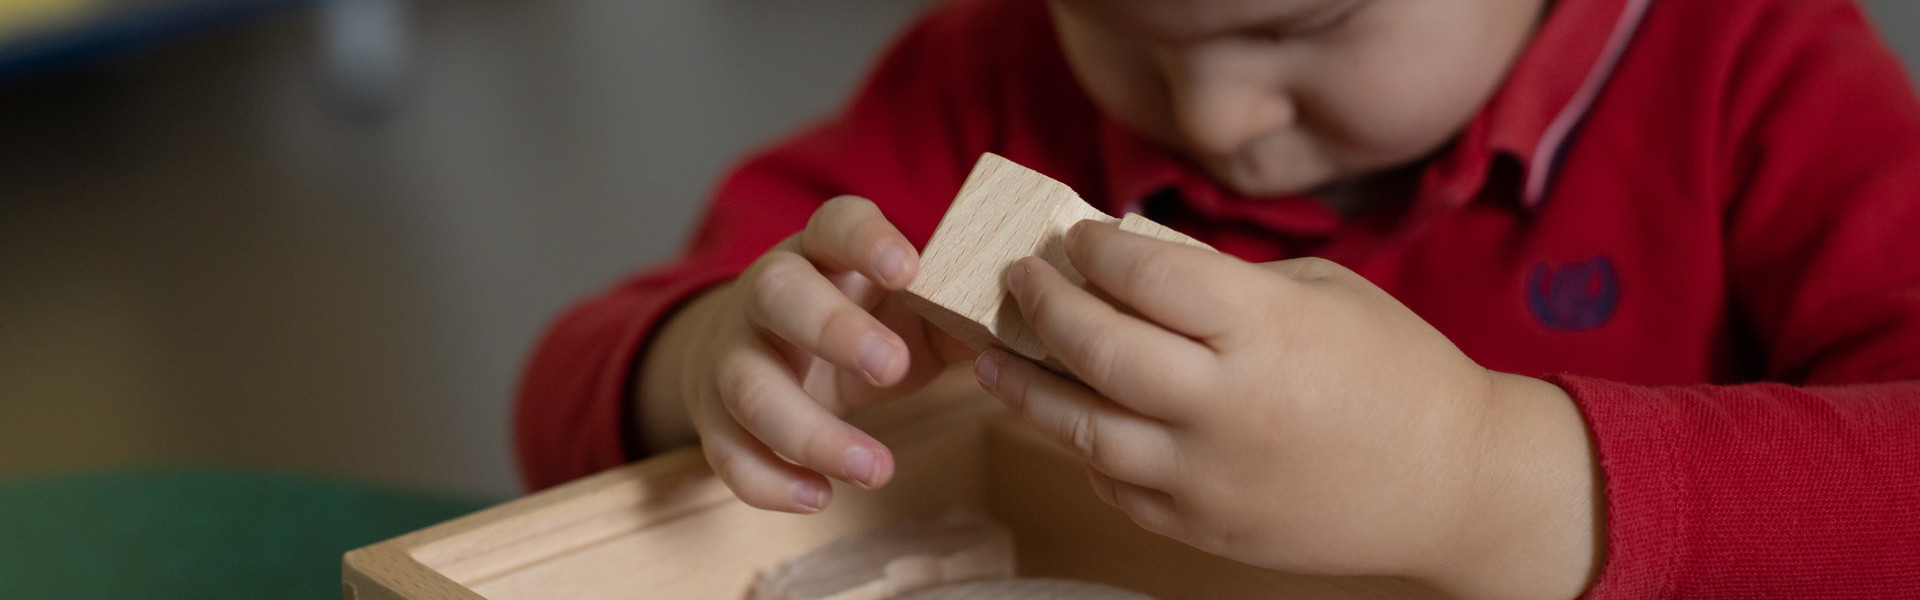 Piccolo utente al Centro Diagnostico di Osimo esplora con le manine diversi oggetti in legno ricoperti di diversi materiali per la stimolazione tattile